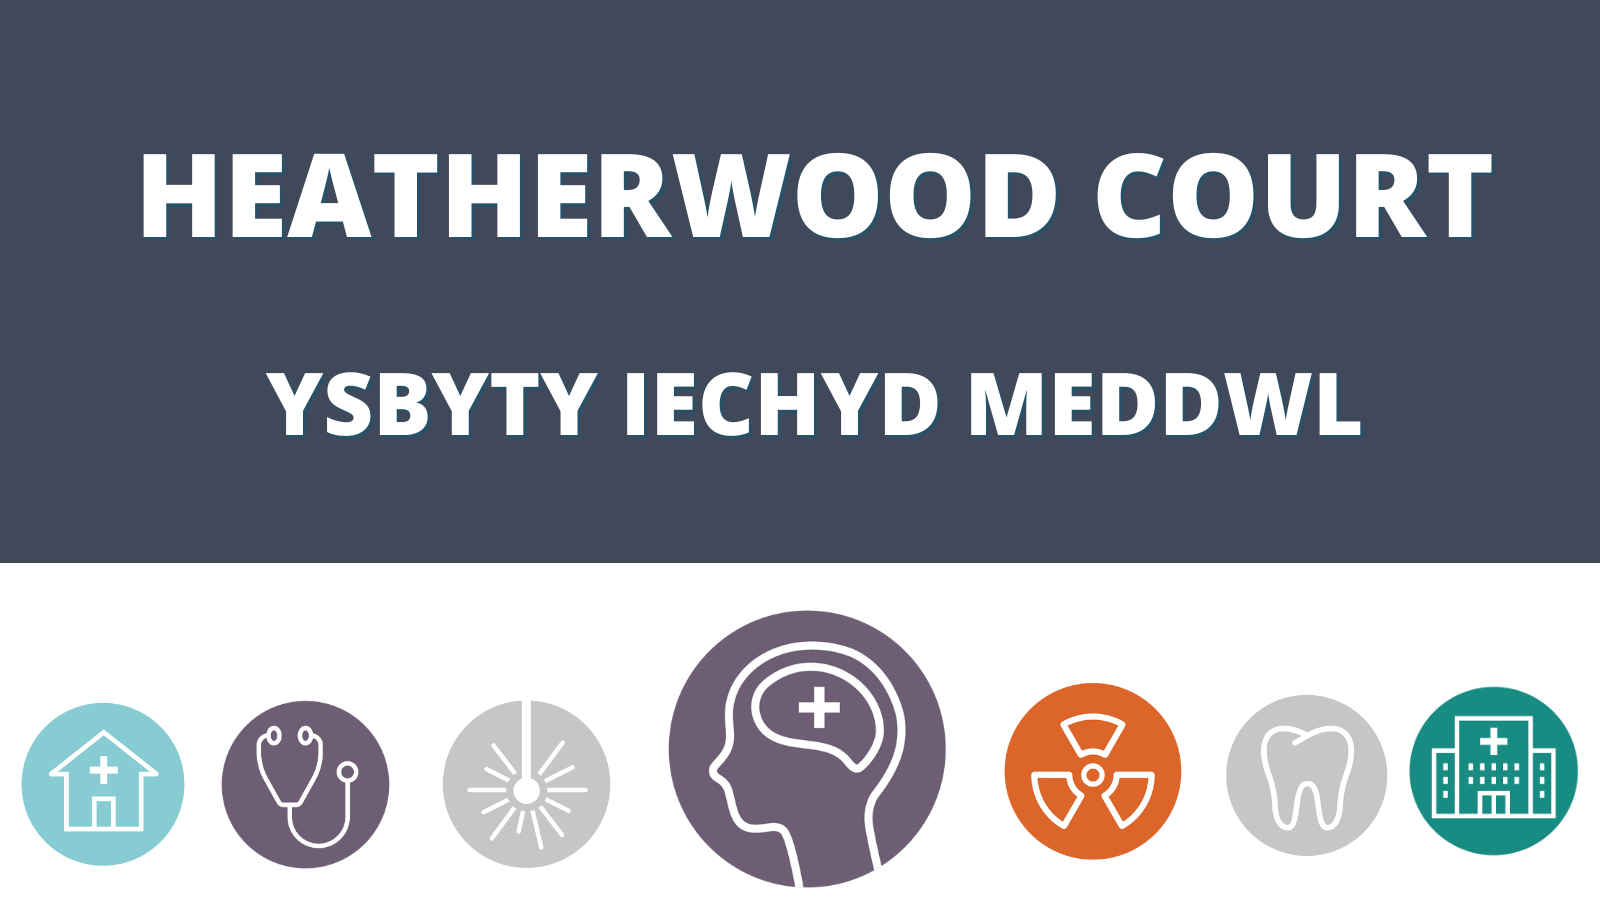 Heatherwood Court - Ysbyty Iechyd Meddwl